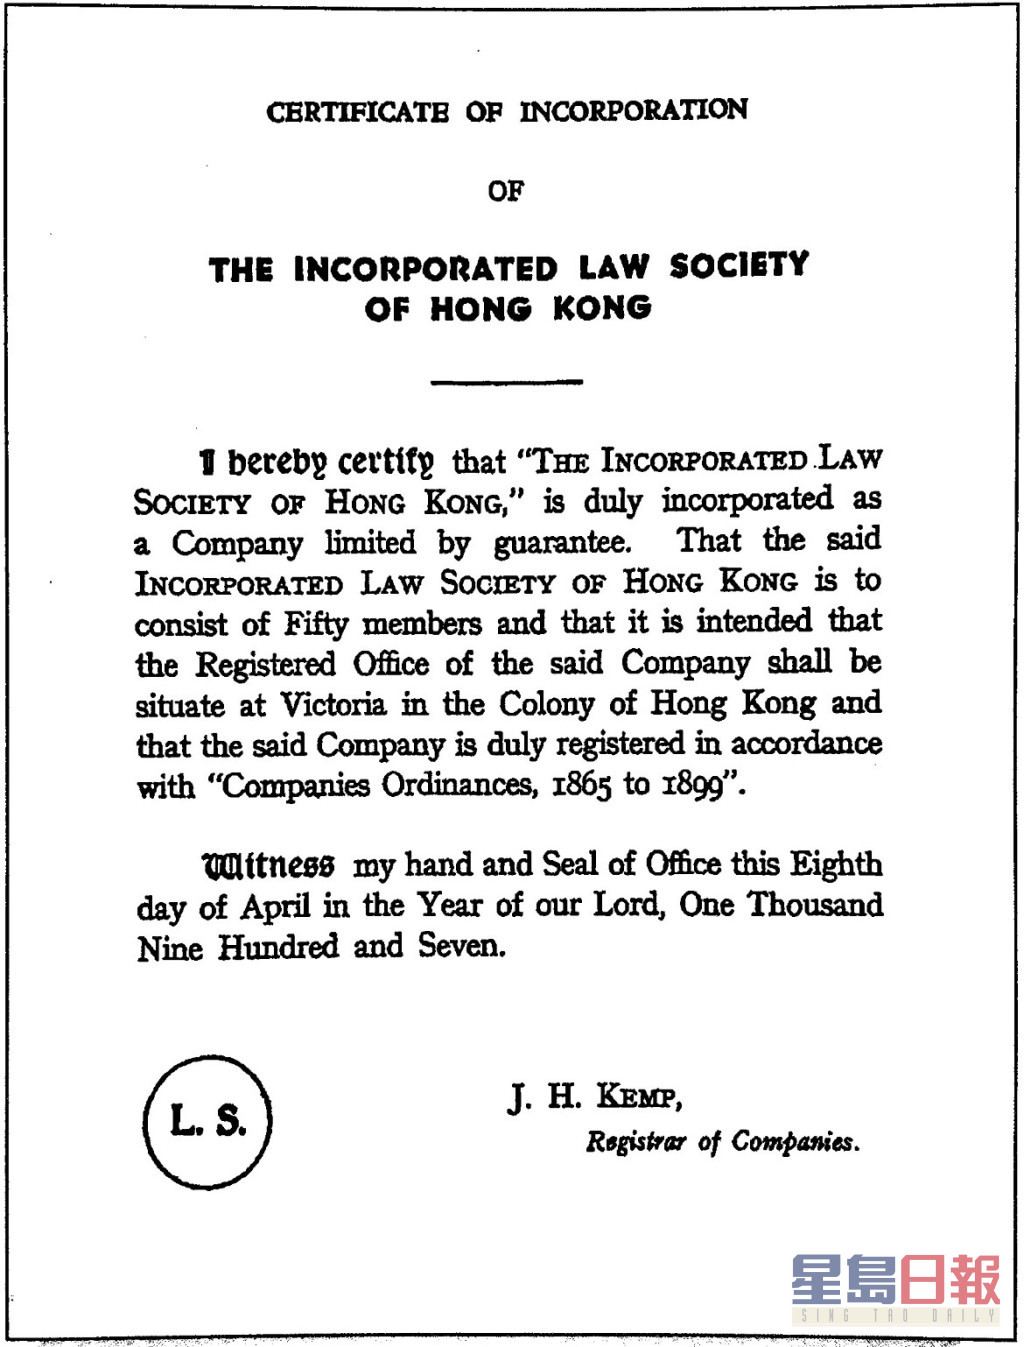 公司注册处处长于1907年4月8日根据《公司条例》签发予律师会的「公司注册证明书」。